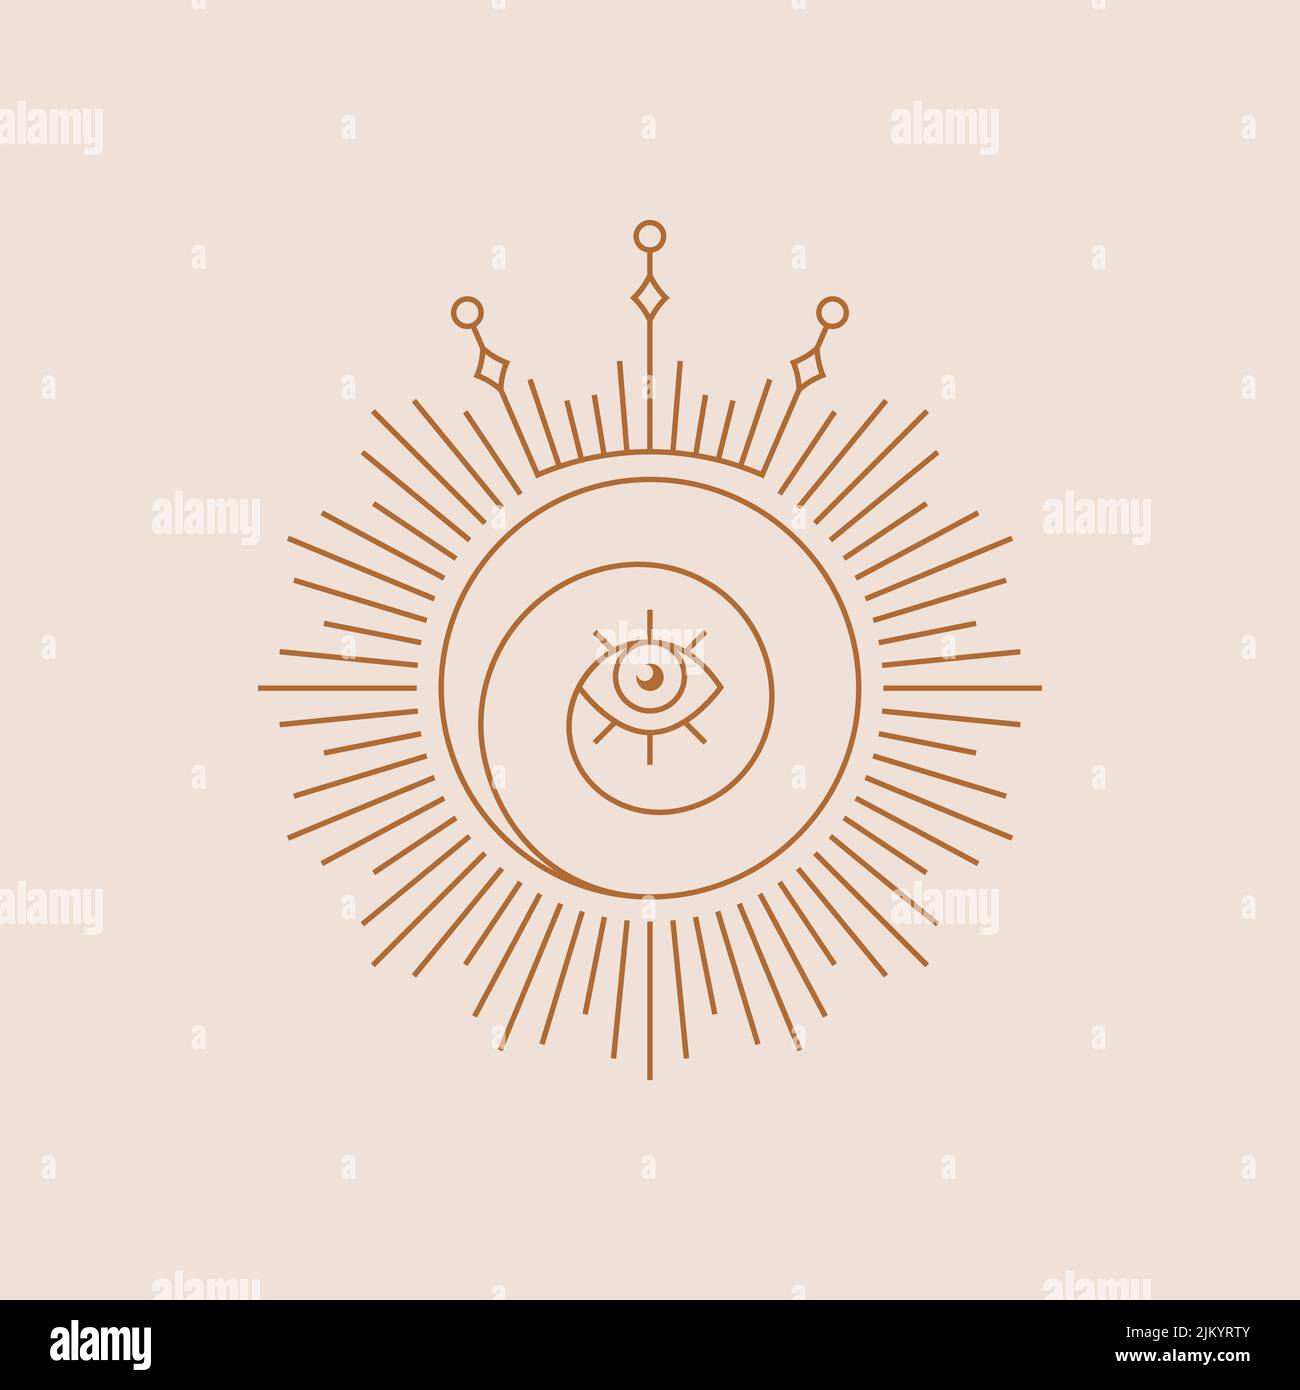 Logo spirituale boho. Simbolo della linea solare con occhio e corona. Illustrazione vettoriale isolata. Elemento di design per magia, esoterica, celeste, astrologia Illustrazione Vettoriale